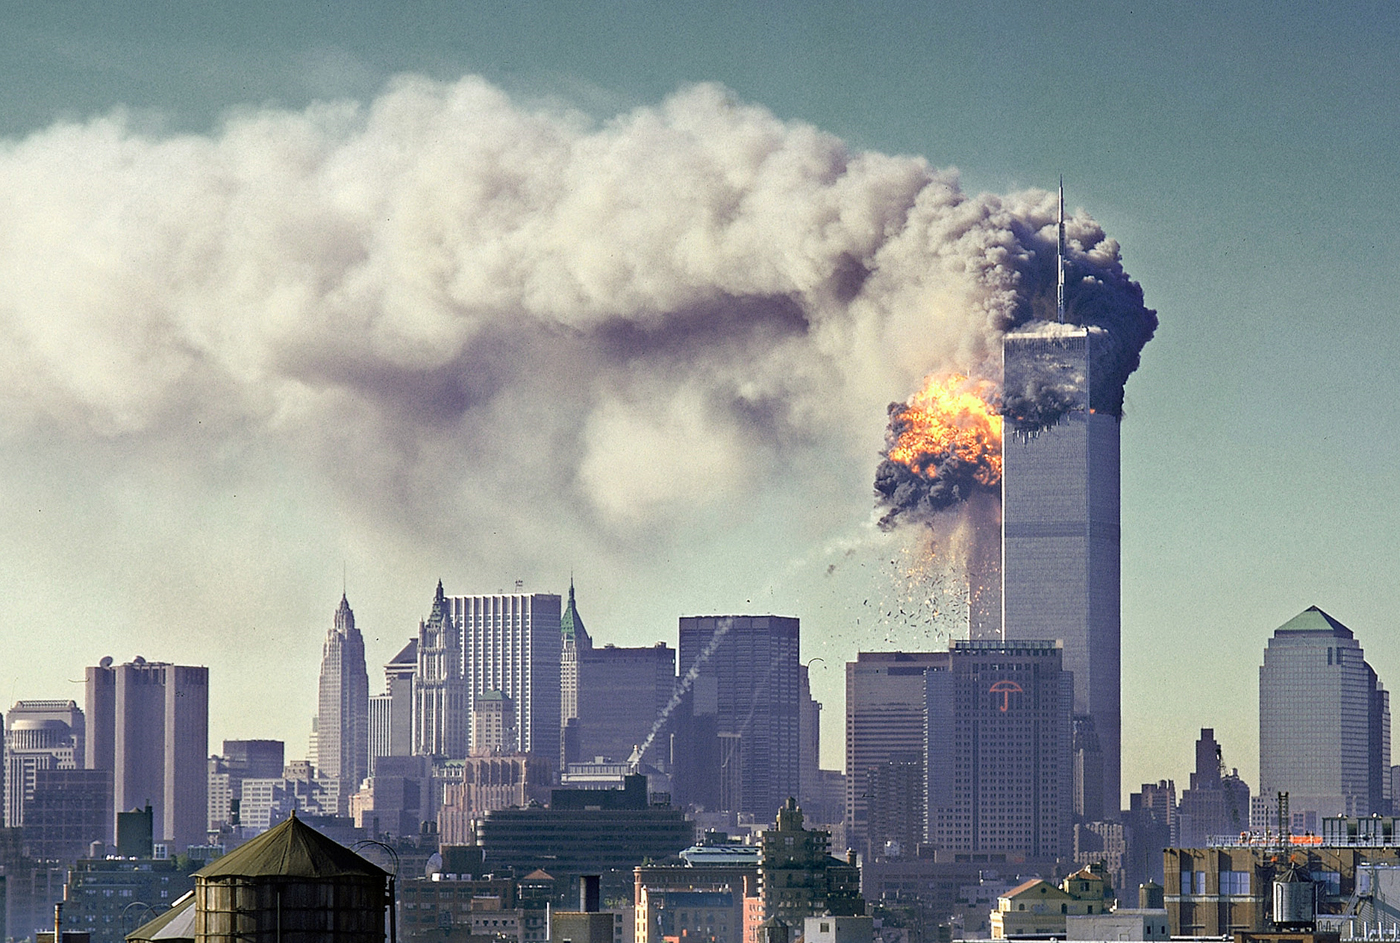 Prije točno 18 godina dogodio se teroristički napad koji je promijenio svijet kakav smo do tada poznavali. Teroristi Al Kaide avionima su se zabili u World Trade Center u New Yorku, a u napadima je stradalo 2996 ljudi. Više od 6000 ih je ranjeno. 